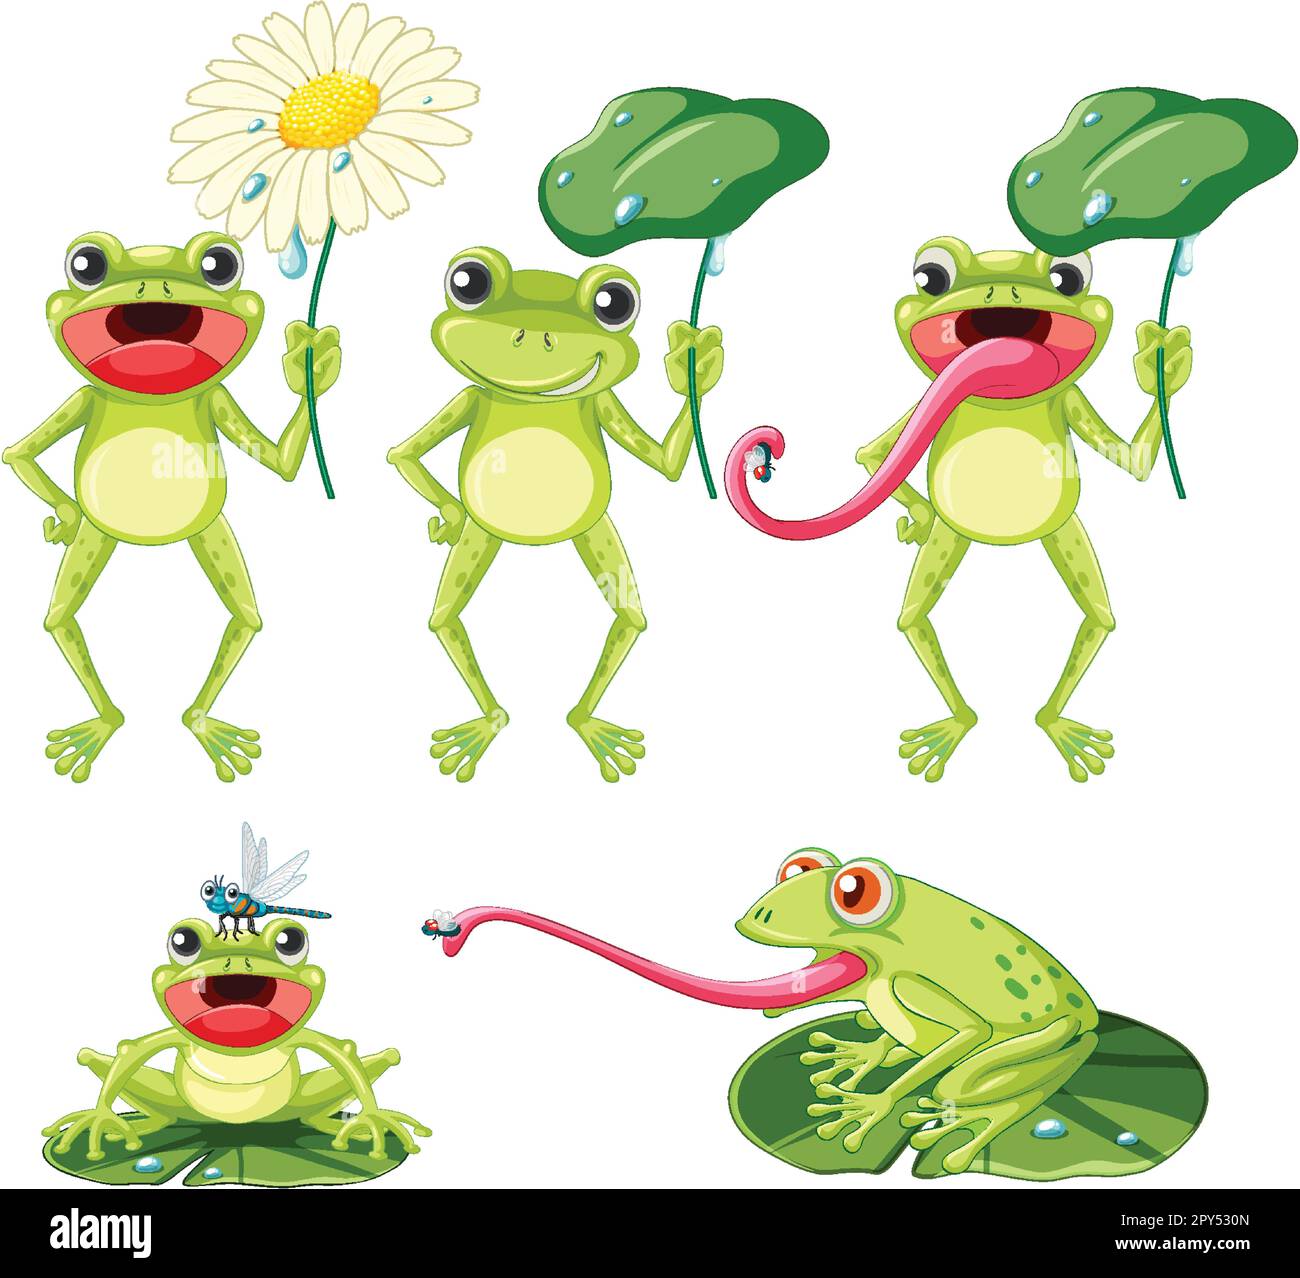 Jeu d'illustrations de personnages de dessin animé grenouille vert Illustration de Vecteur